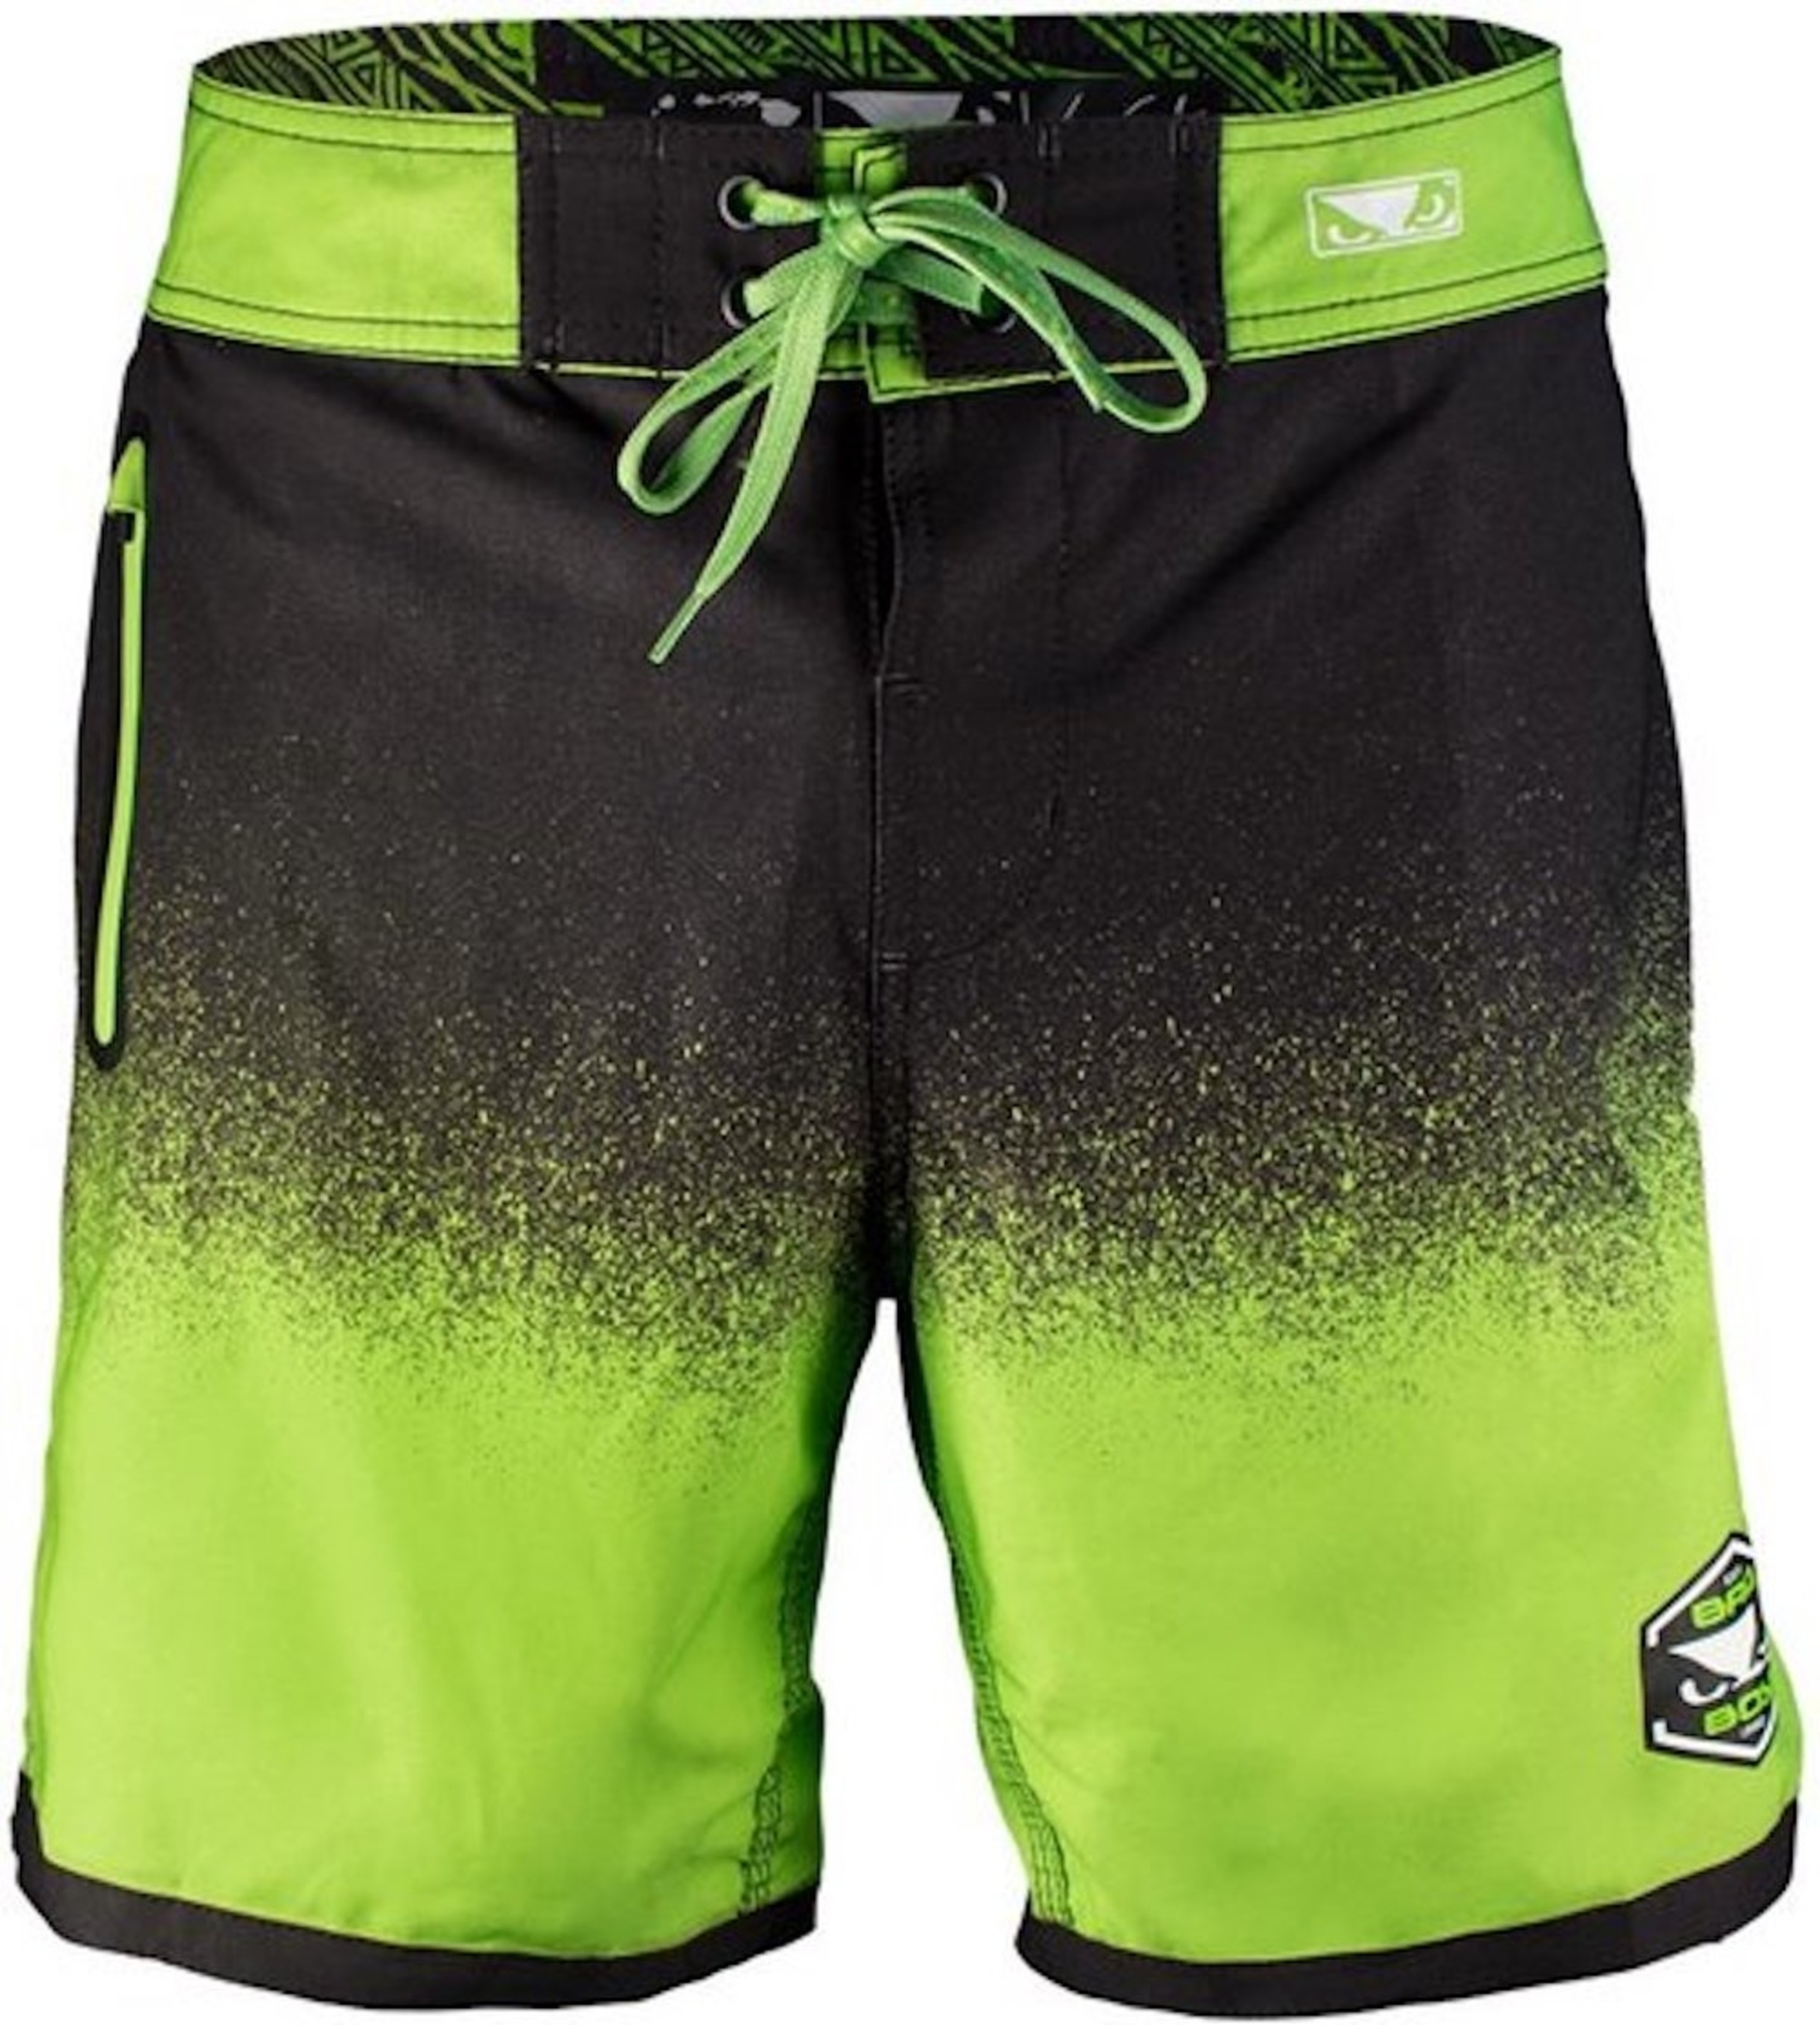 Bad Boy HI-TIDE Hybrid Swim- Shorts Training Black Green - FIGHTWEAR ...